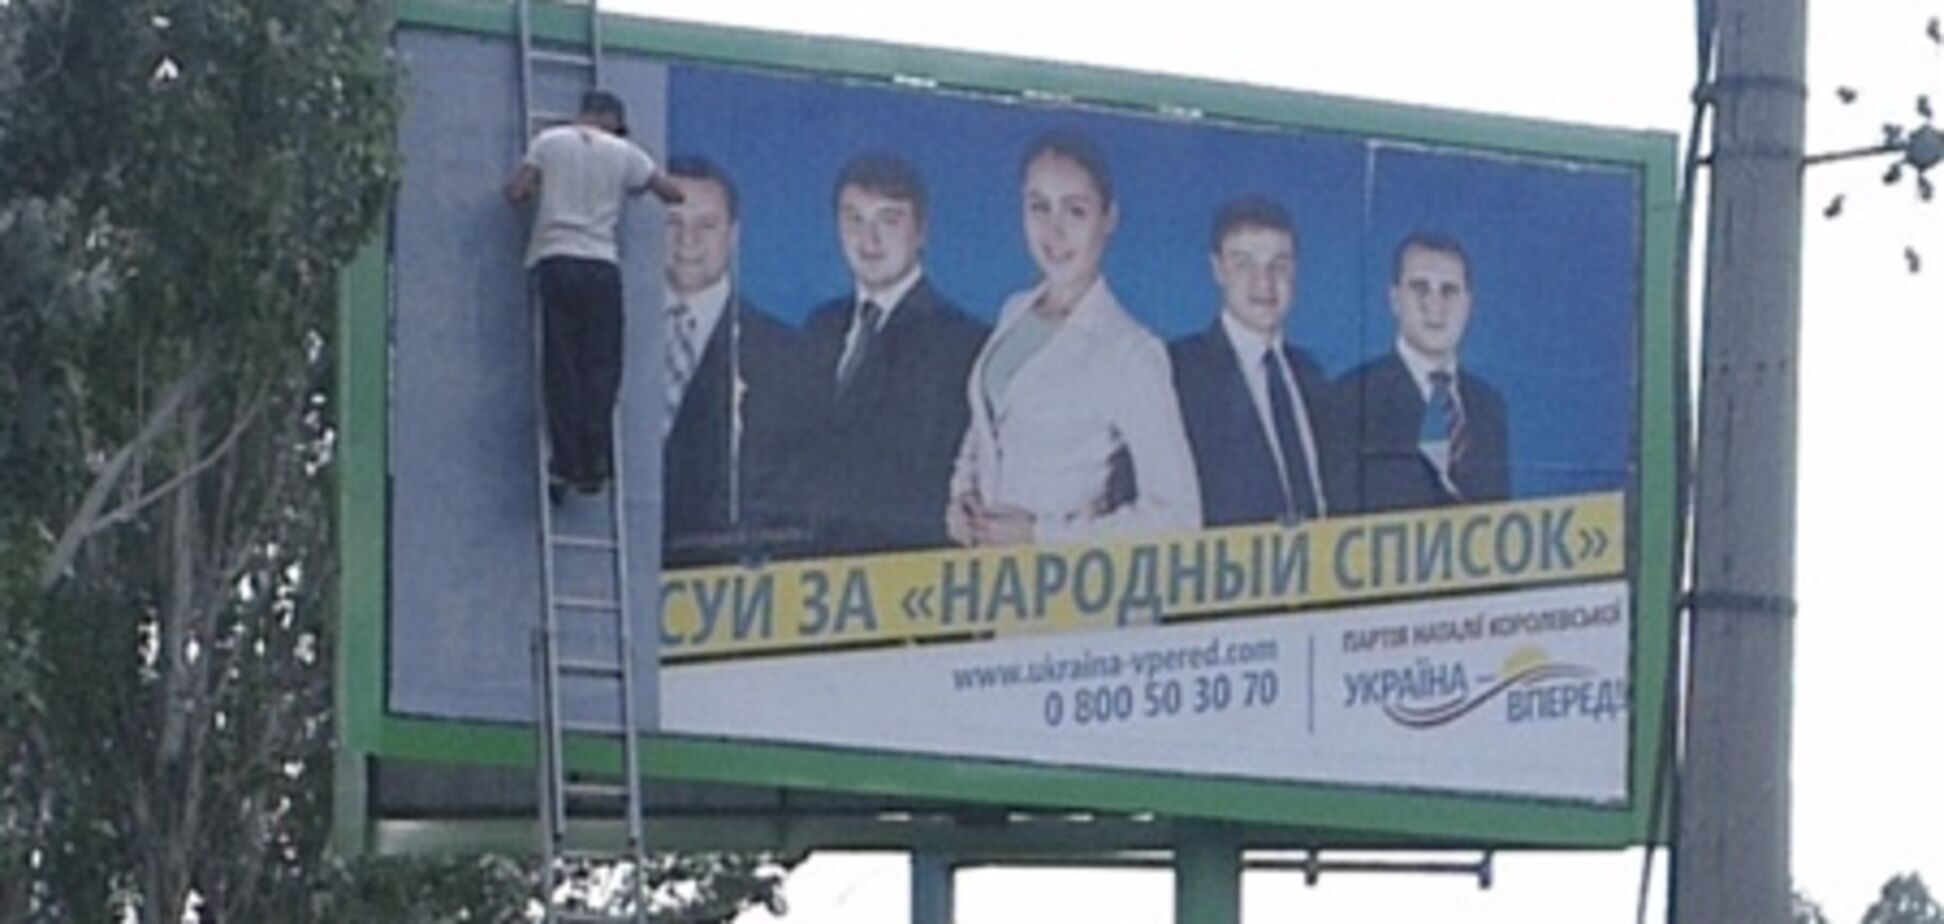 Партии 'Украина - Вперед!' заклеили биллборды